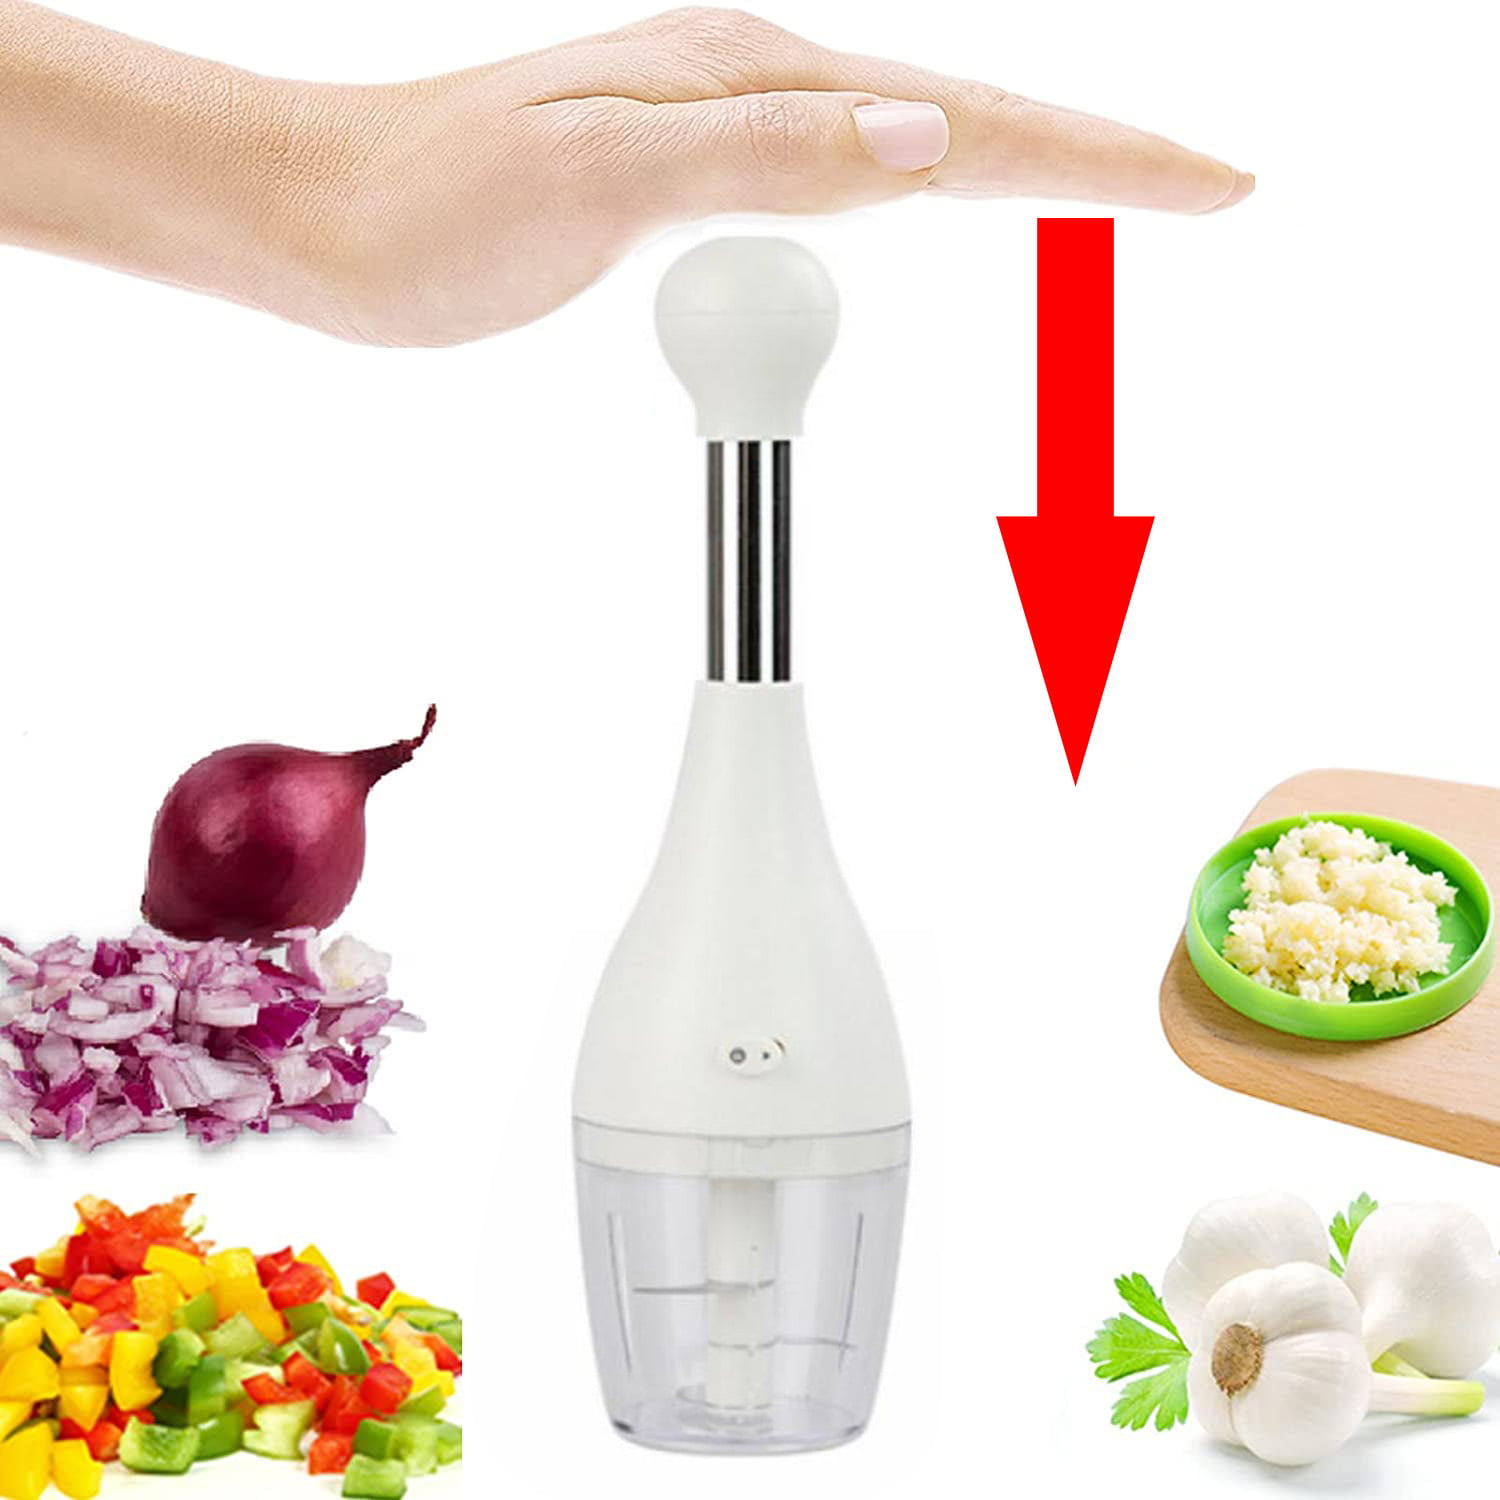 Automatic Rebound Stainless Steel Hand Chopper Sharp Blade Vegetable Onions  Garlic Nuts Salads Hand Chopper Kitchen Gadget